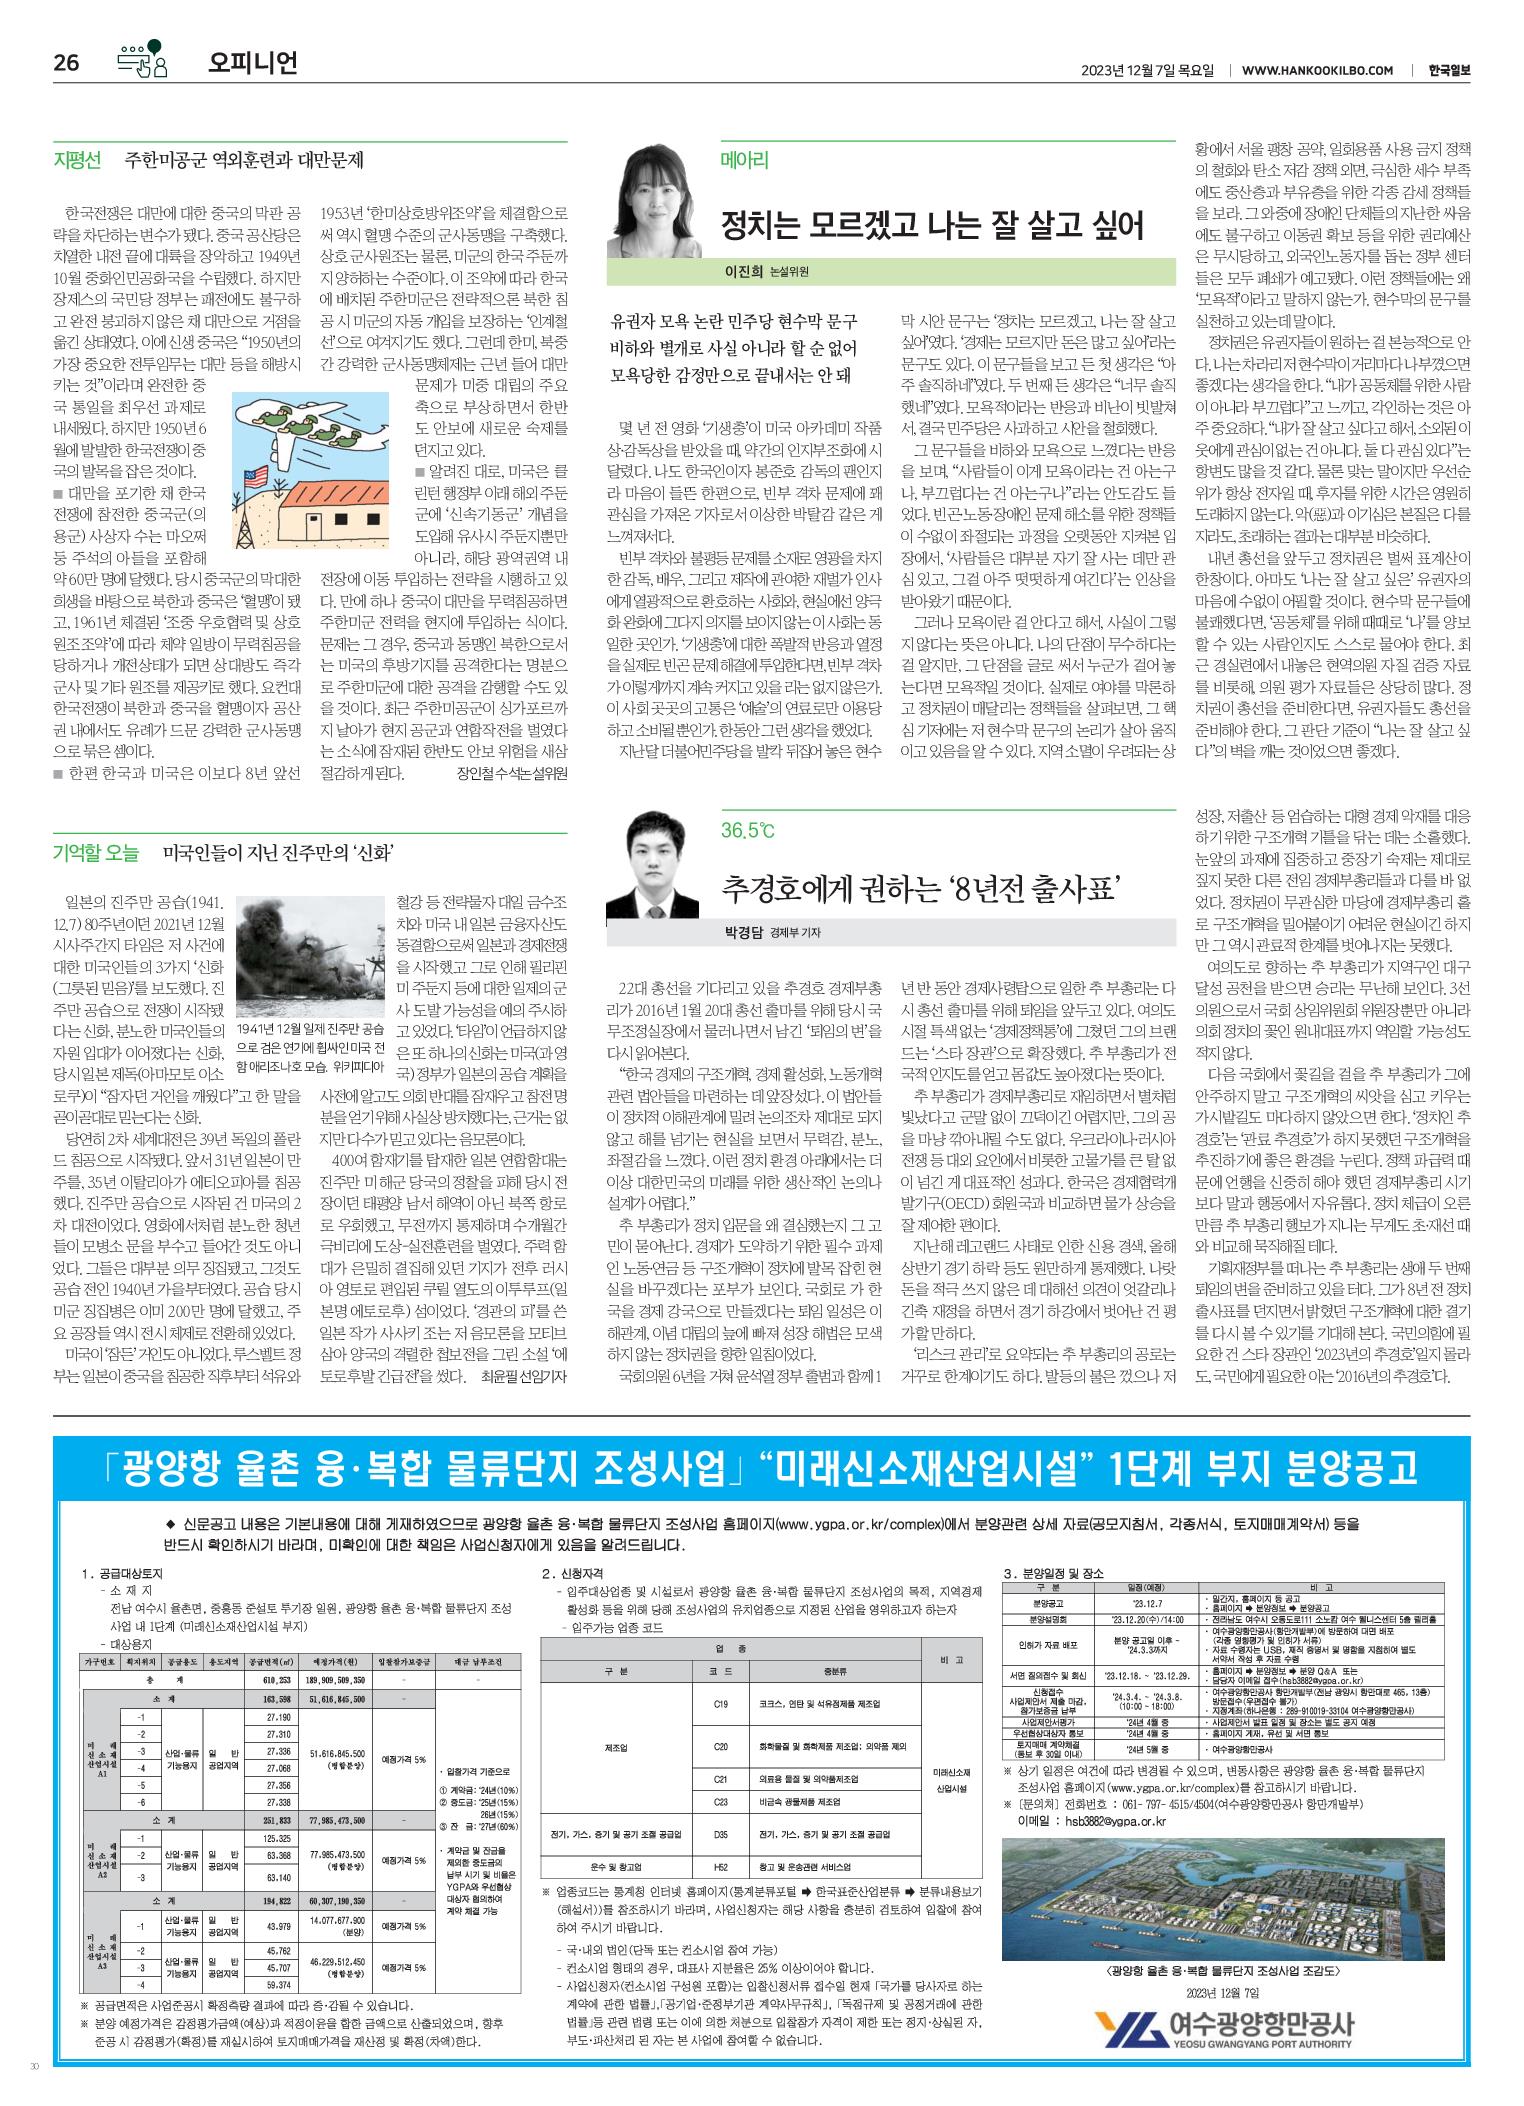 한국일보 게재('23.12.7.)과 관련된 이미지 입니다